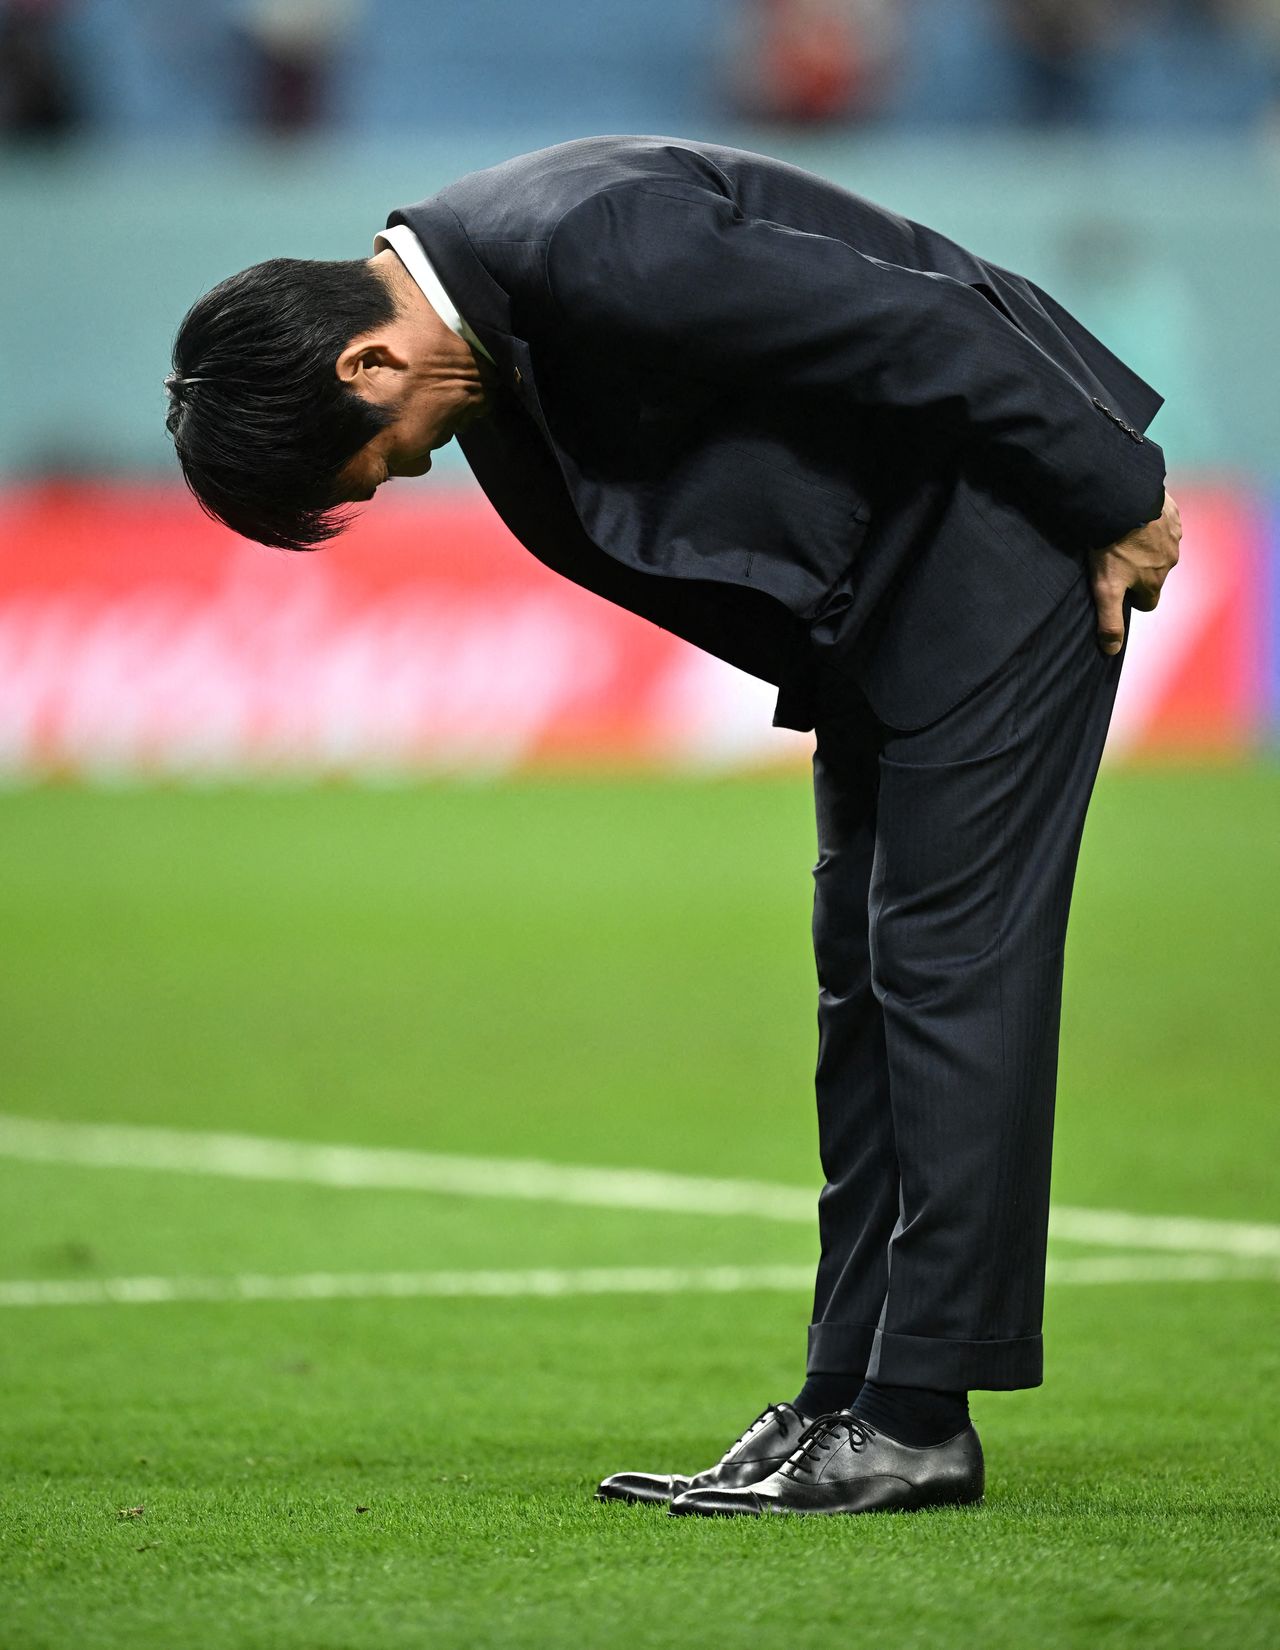 مورياسو هاجيمي ينحنى بإخلاص أمام أنصاره بعد خروج منتخب اليابان لكرة القدم للرجال من بطولة كأس العالم في قطر في 5 ديسمبر/ كانون الأول 2022. (© رويترز)